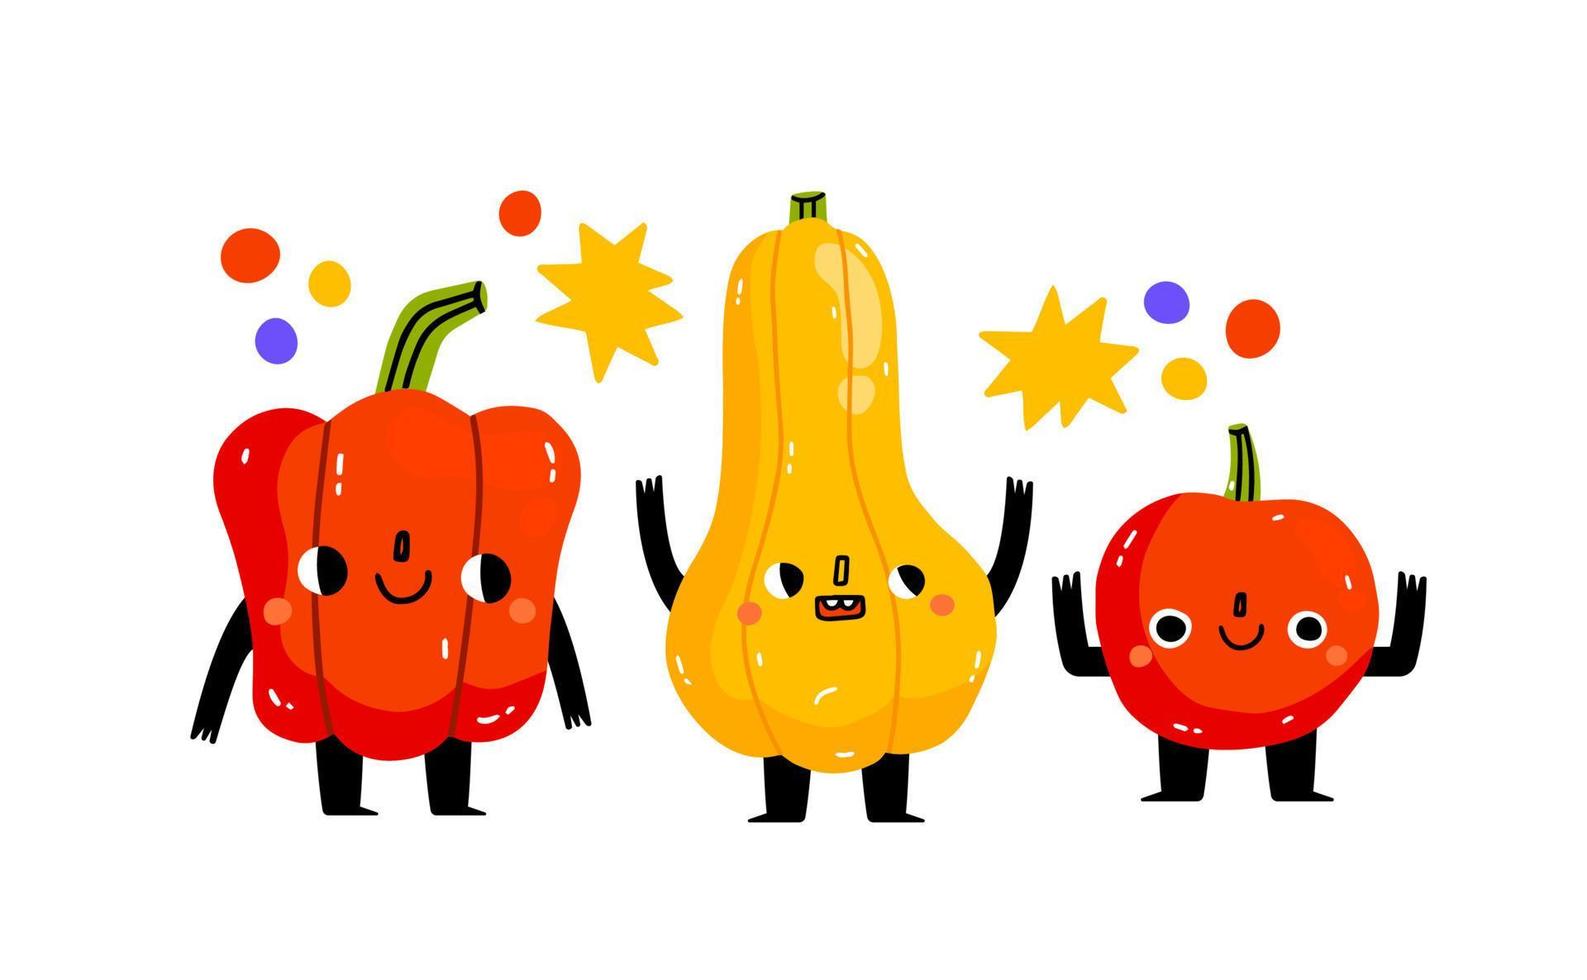 drie schattig groenten zijn hebben plezier. pompoen, tomaat, peper.schattig groente karakter met grappig kawaii gezicht. hand- getrokken tekenfilm schattig illustratie voor stickers, affiches, muur kunst. zomer afdrukken vector